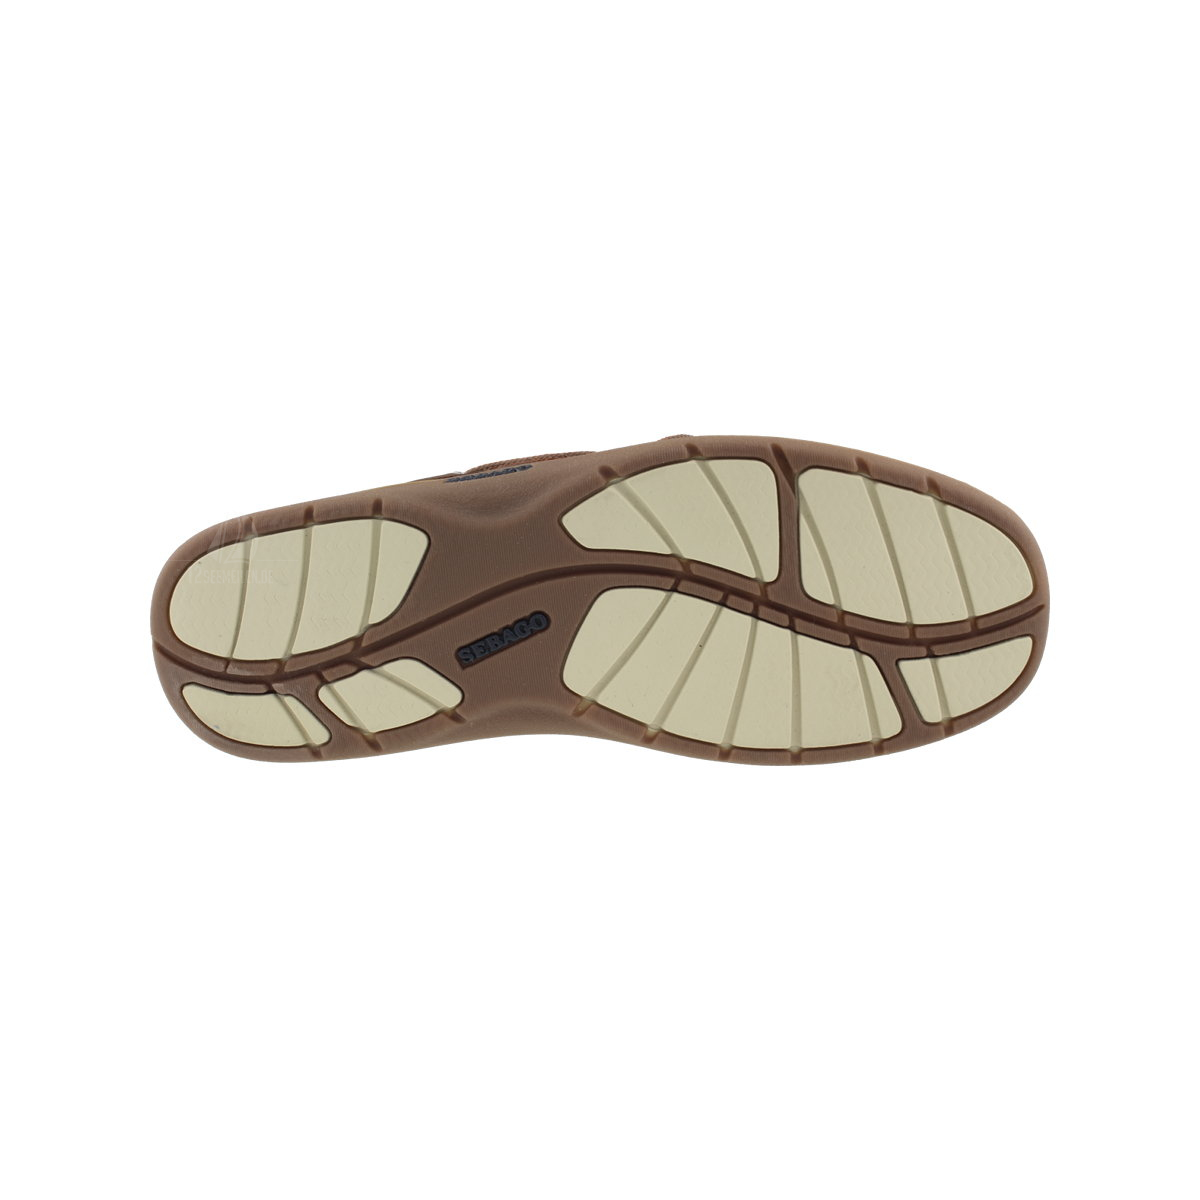 Sebago Clovehitch II bootschoen heren walnut leather eu 46.5 (us 12)